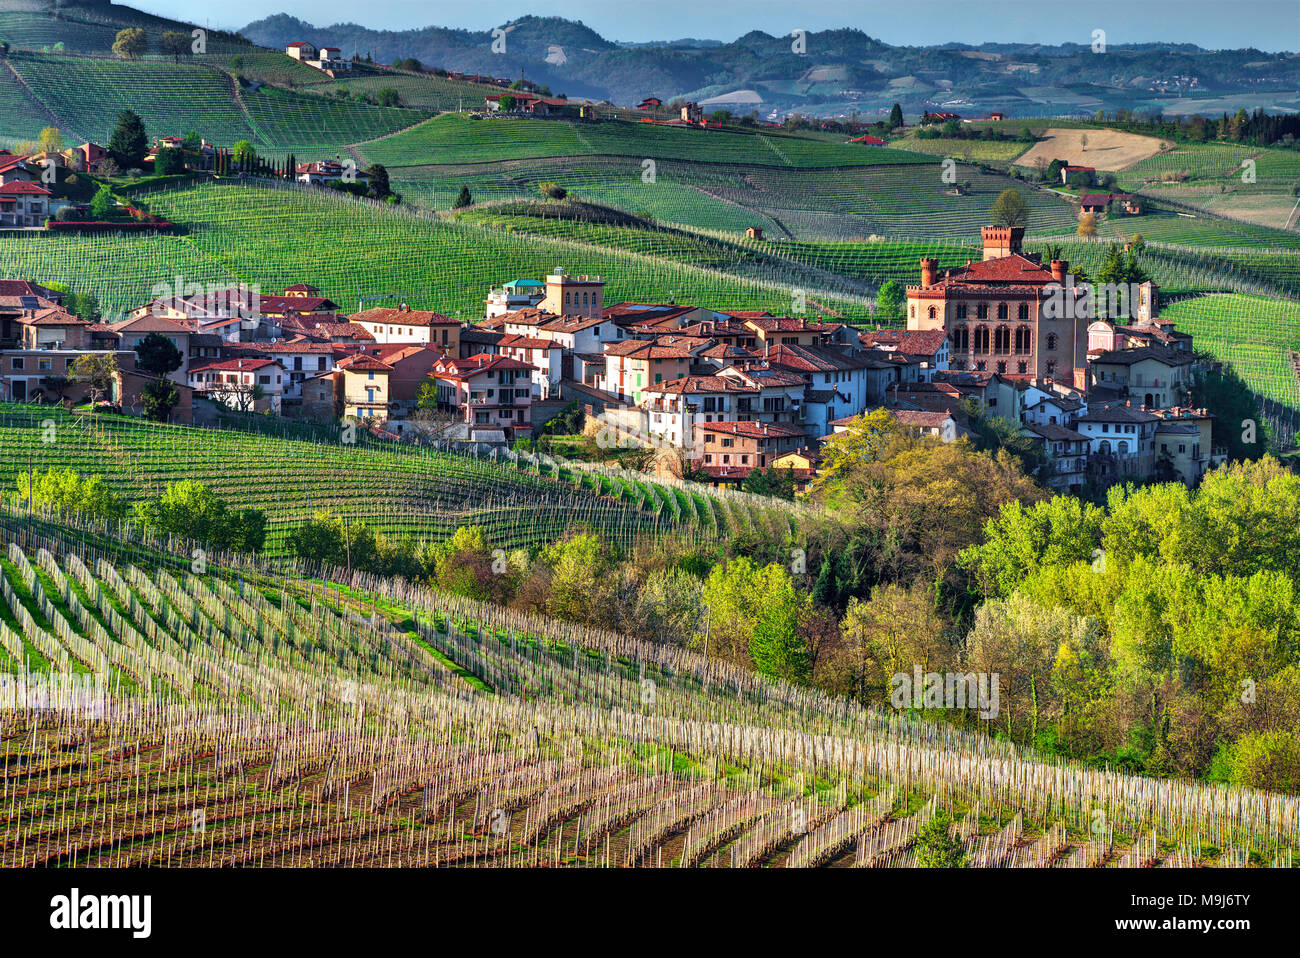 Die Stadt Barolo, mit der falletti Schloss, inmitten der Weinberge, im Zentrum der Gegend von der gleichnamigen Wein. Unesco-Weltkulturerbe. Stockfoto